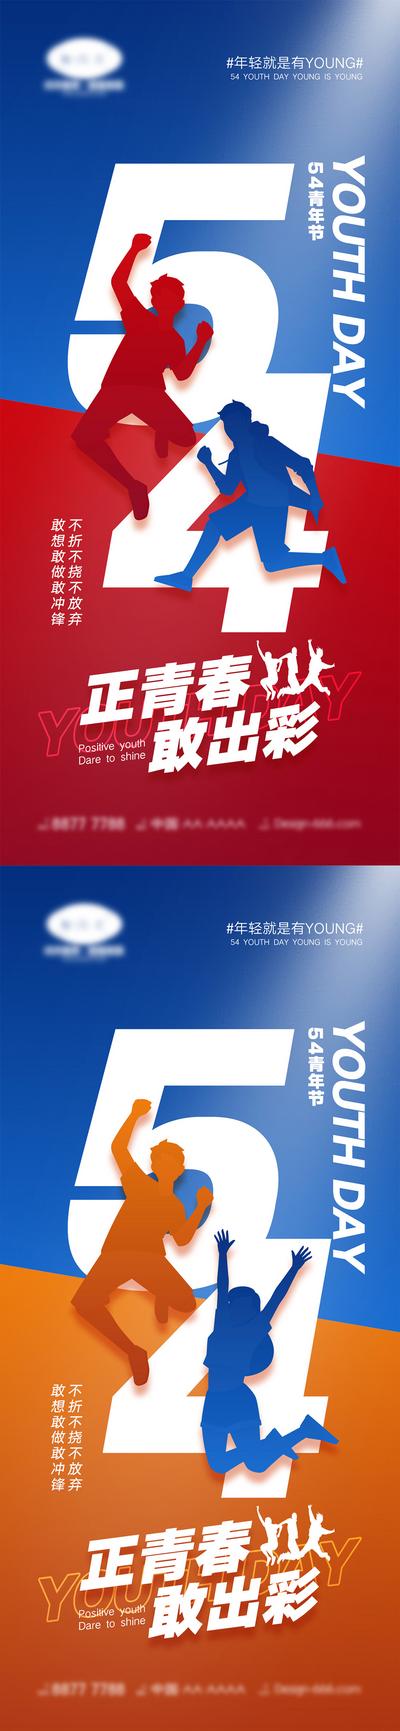 【南门网】海报 插画 系列 54 青年节 奋斗 青春 滑板 剪影 公历节日 少年